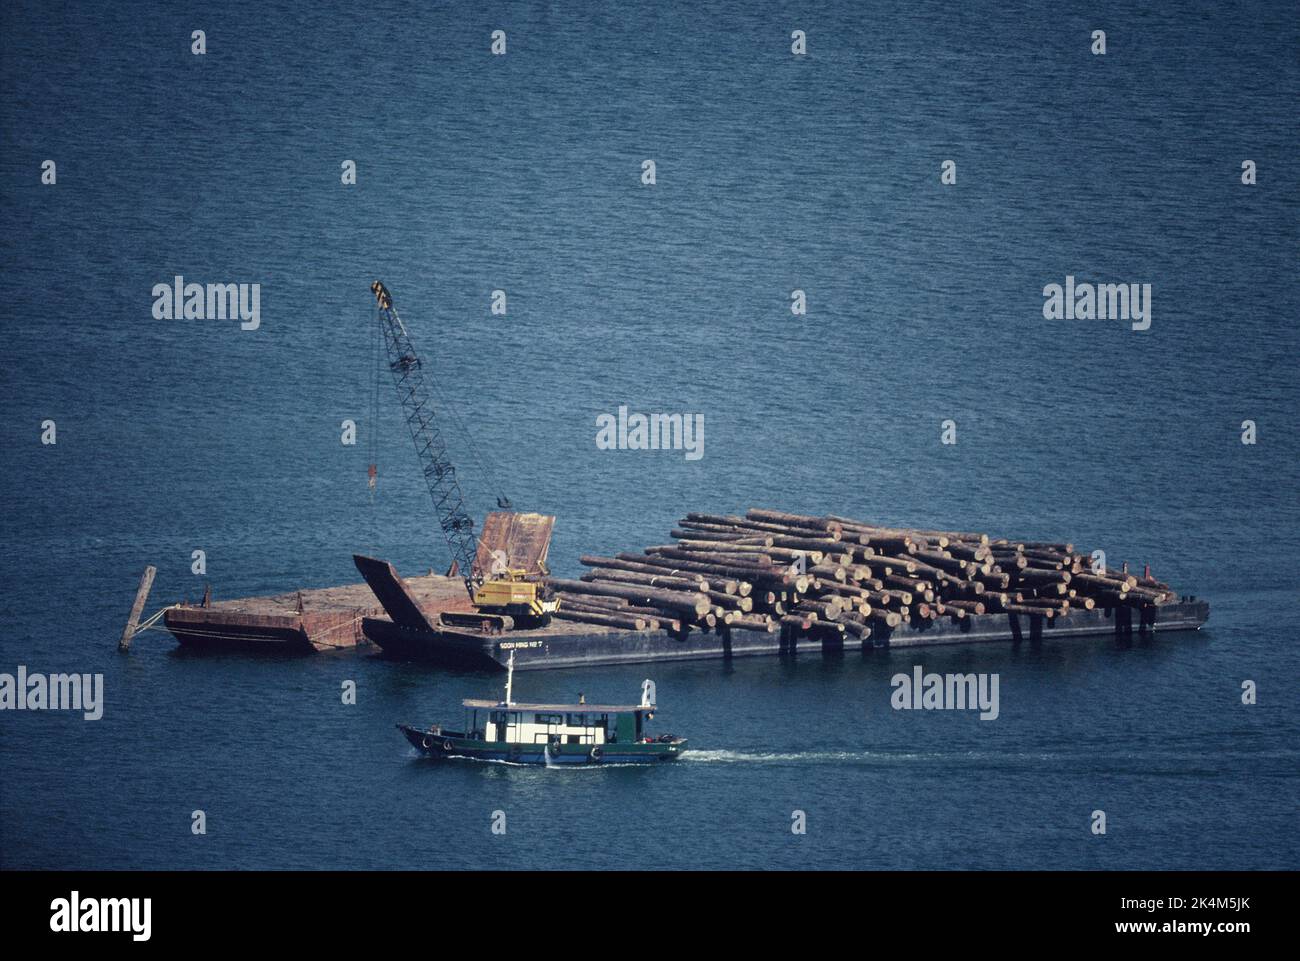 Malaysia. Sabah. Sandakan Hafen. Übersicht über die Baumstämme auf dem schwimmenden Lastkahn mit Caterpillar-Kran. Stockfoto